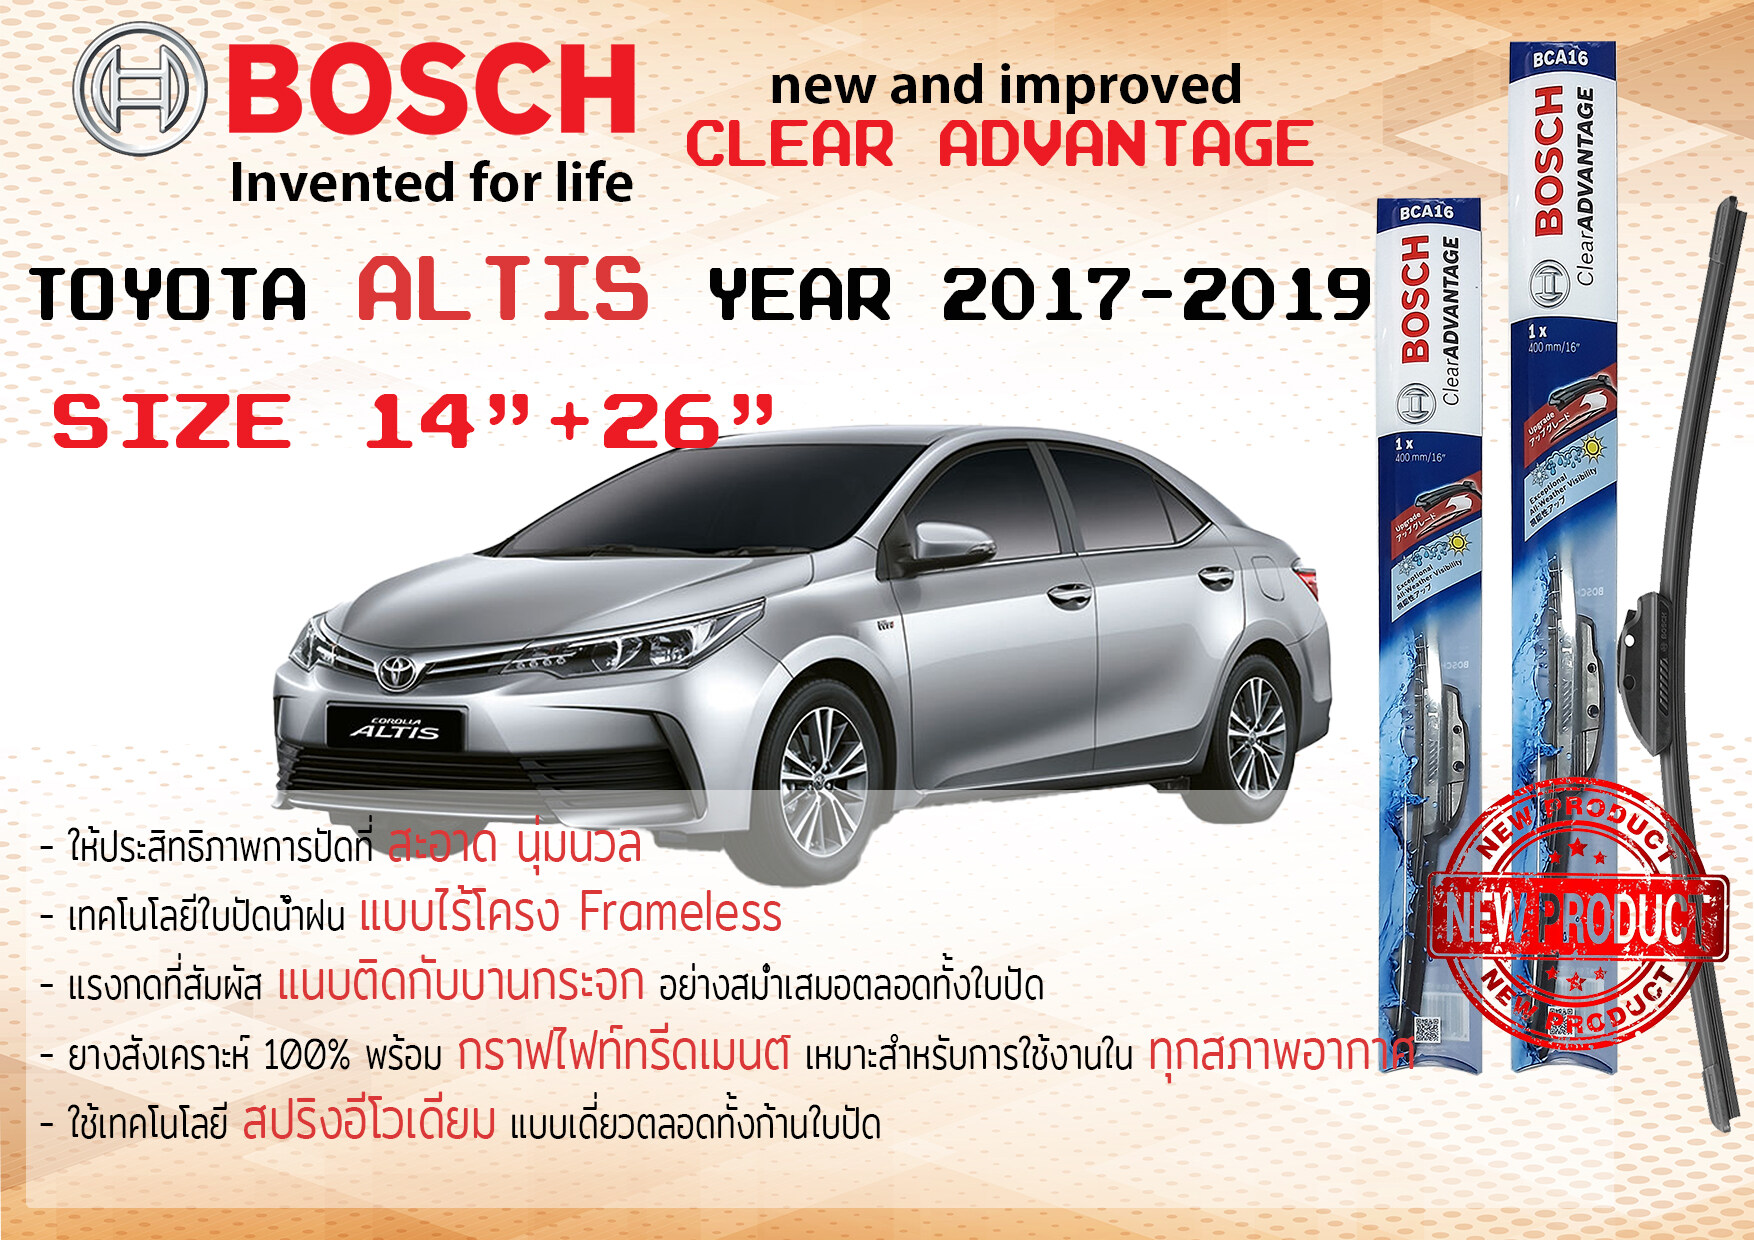 ใบปัดน้ำฝน คู่หน้า Bosch Clear Advantage frameless ก้านอ่อน ขนาด 14”+26” สำหรับรถ Toyota ALTIS ปี 2017-2019 ปี 17,18,19 โตโยต้า โตโยตา อัลติส ทนแสง UV